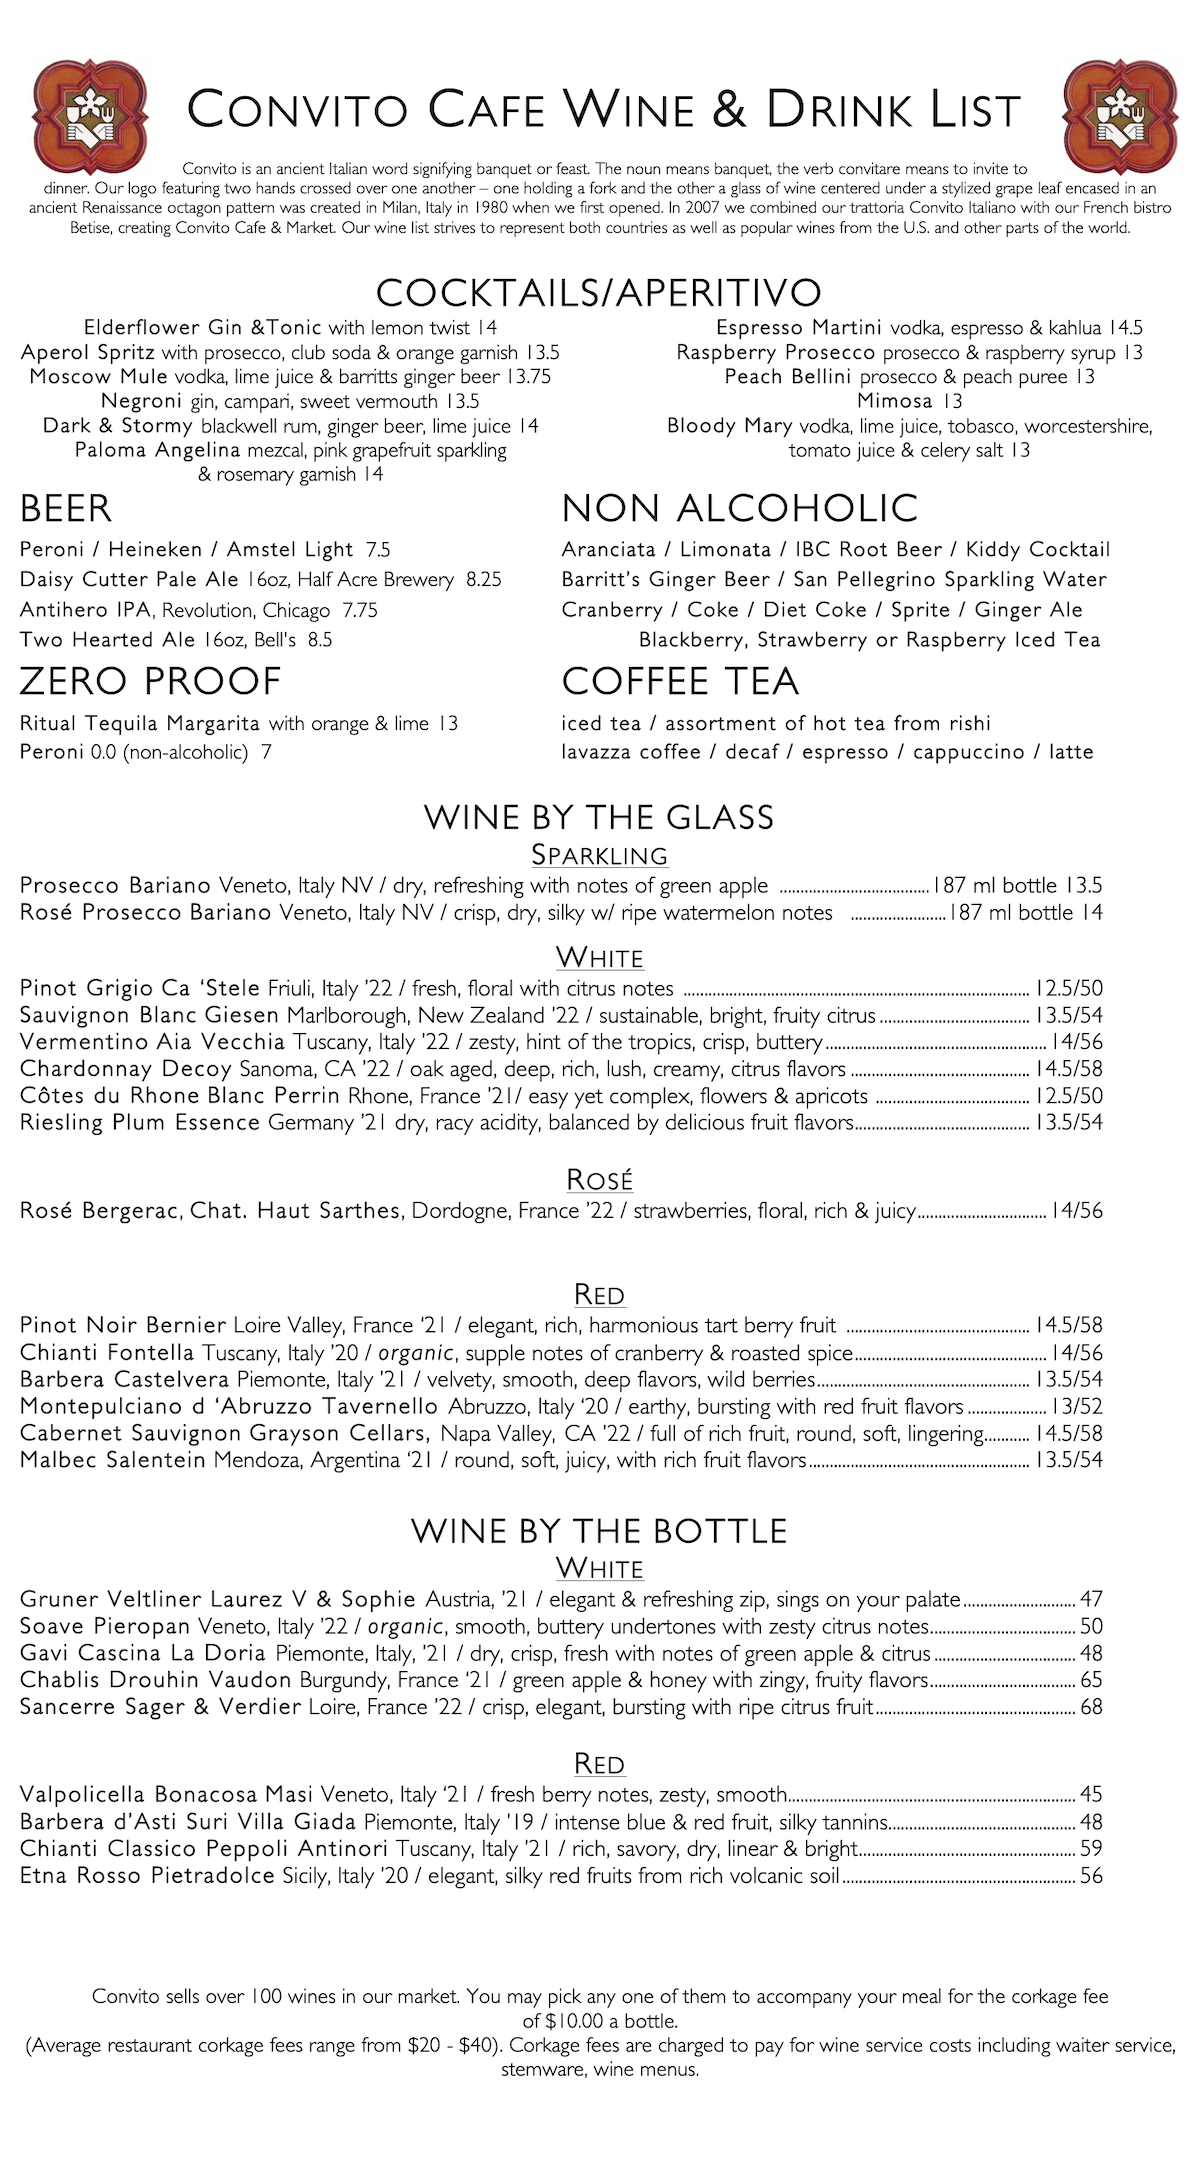 Convito Cafe Wine & Drink List